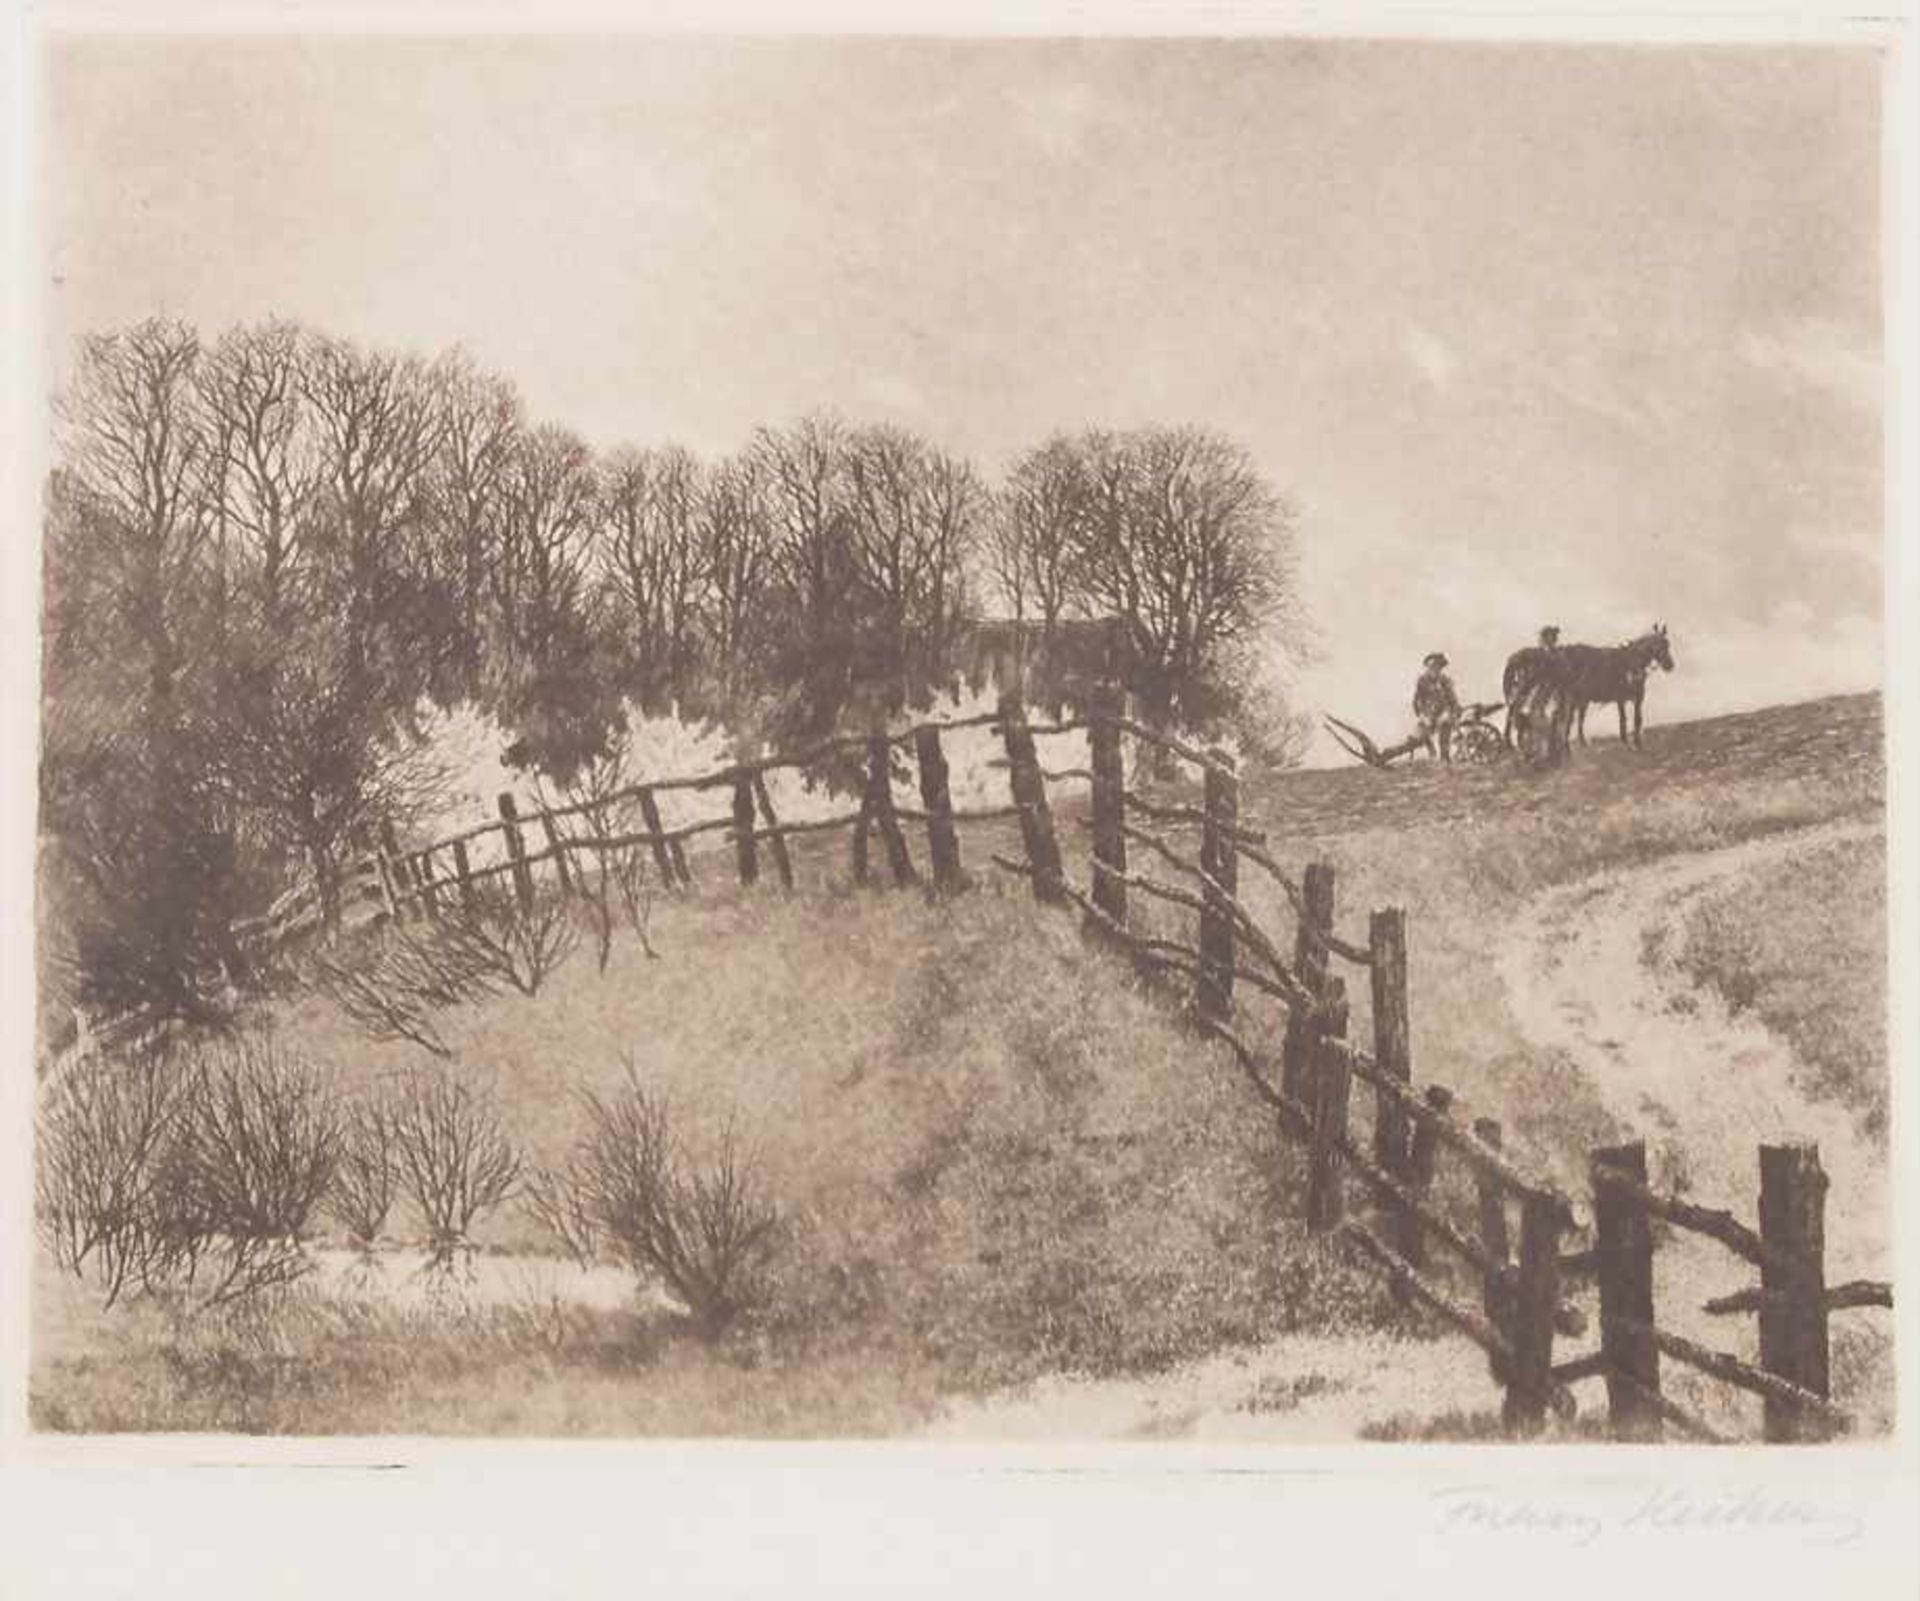 Franz Hecker (1870-1944), 'Landschaft mit Pferdepflug' / 'A landscape with horse plough'